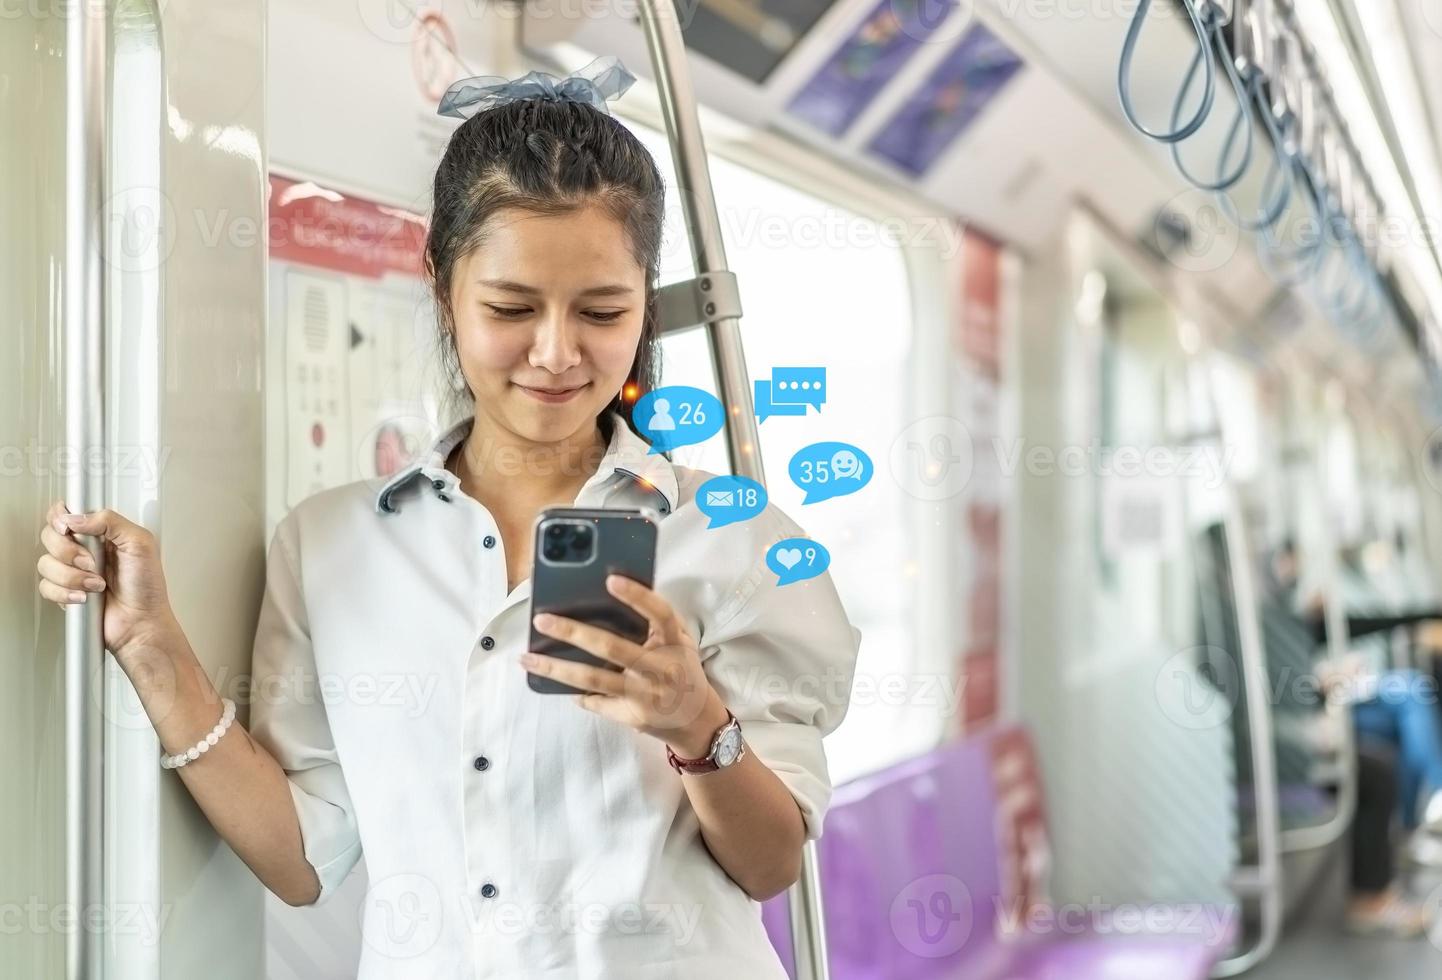 jeune femme asiatique passagère debout et utilisant un téléphone portable à l'intérieur d'une voiture vide de métro ou de train aérien, loisirs et vie quotidienne photo